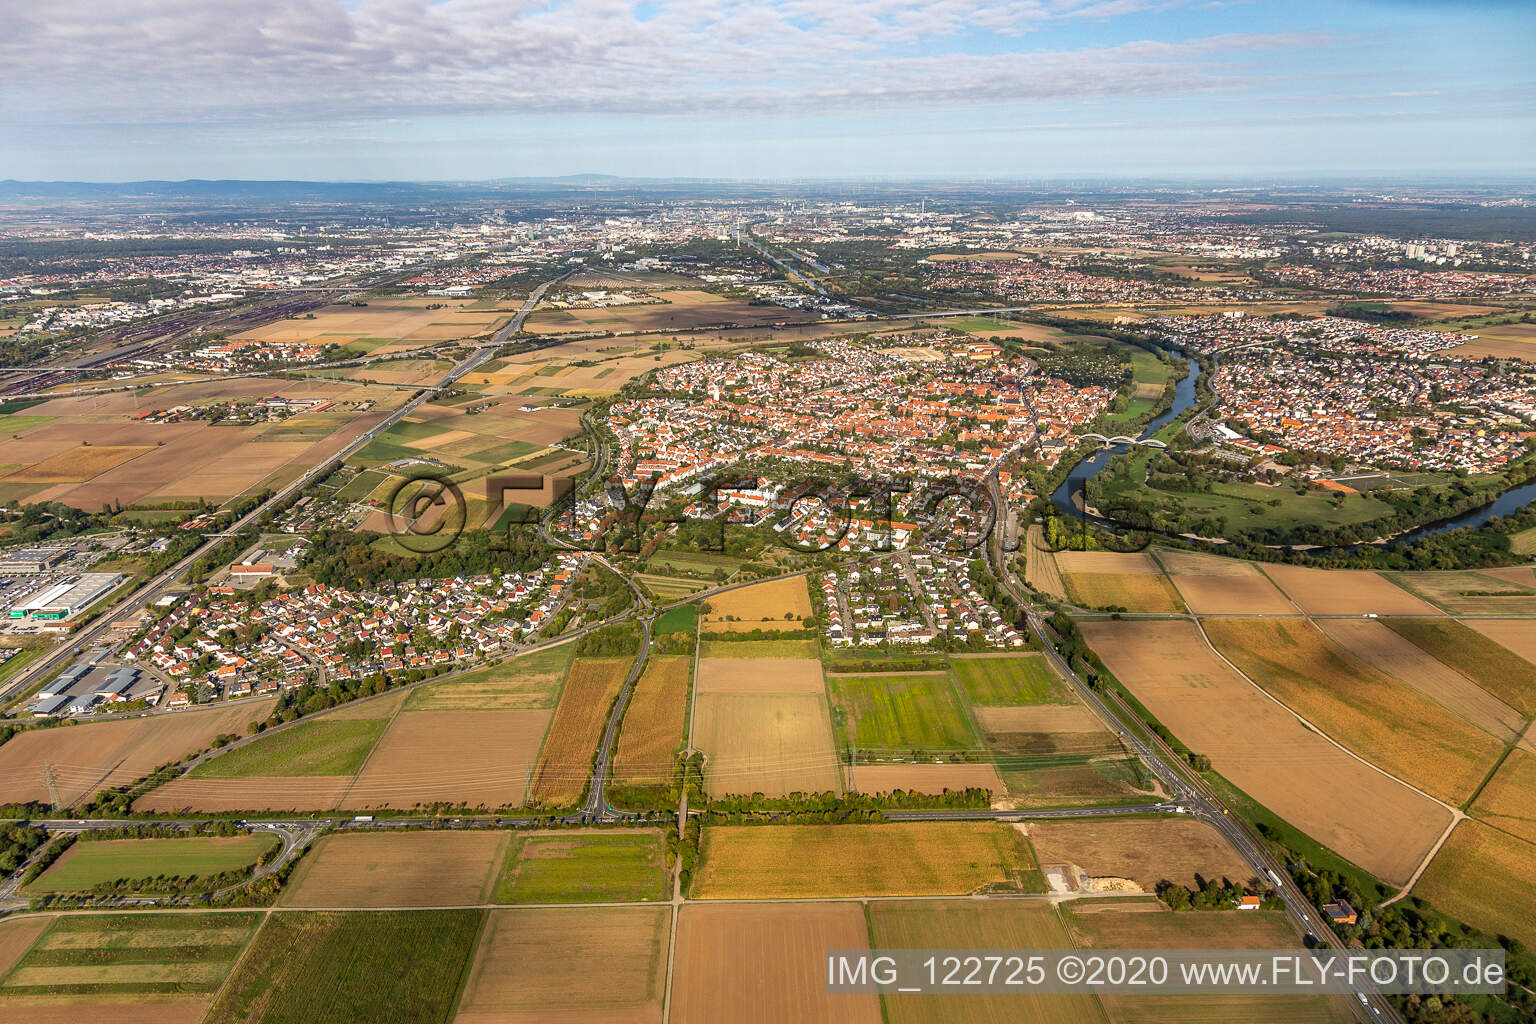 Luftaufnahme von Ortskern Seckenheim am Uferbereich des Neckar - Flußverlaufes in Mannheim im Bundesland Baden-Württemberg, Deutschland